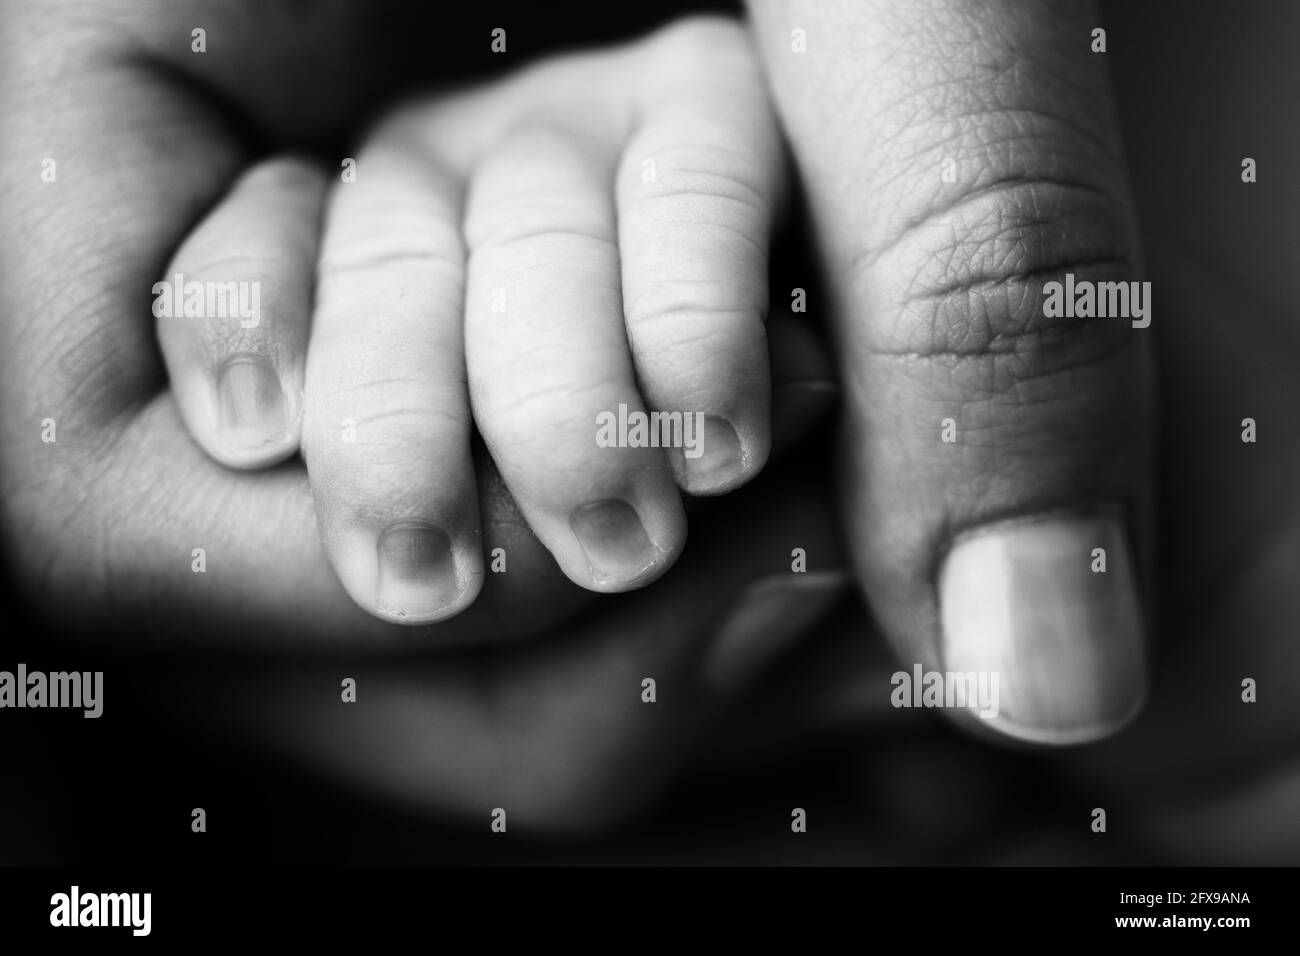 Ein Neugeborenes hält sich an den Finger der Mutter, des Vaters. Hände von Eltern und Baby aus nächster Nähe. Ein Kind vertraut und hält sie fest. Schwarzweiß-Foto. Stockfoto